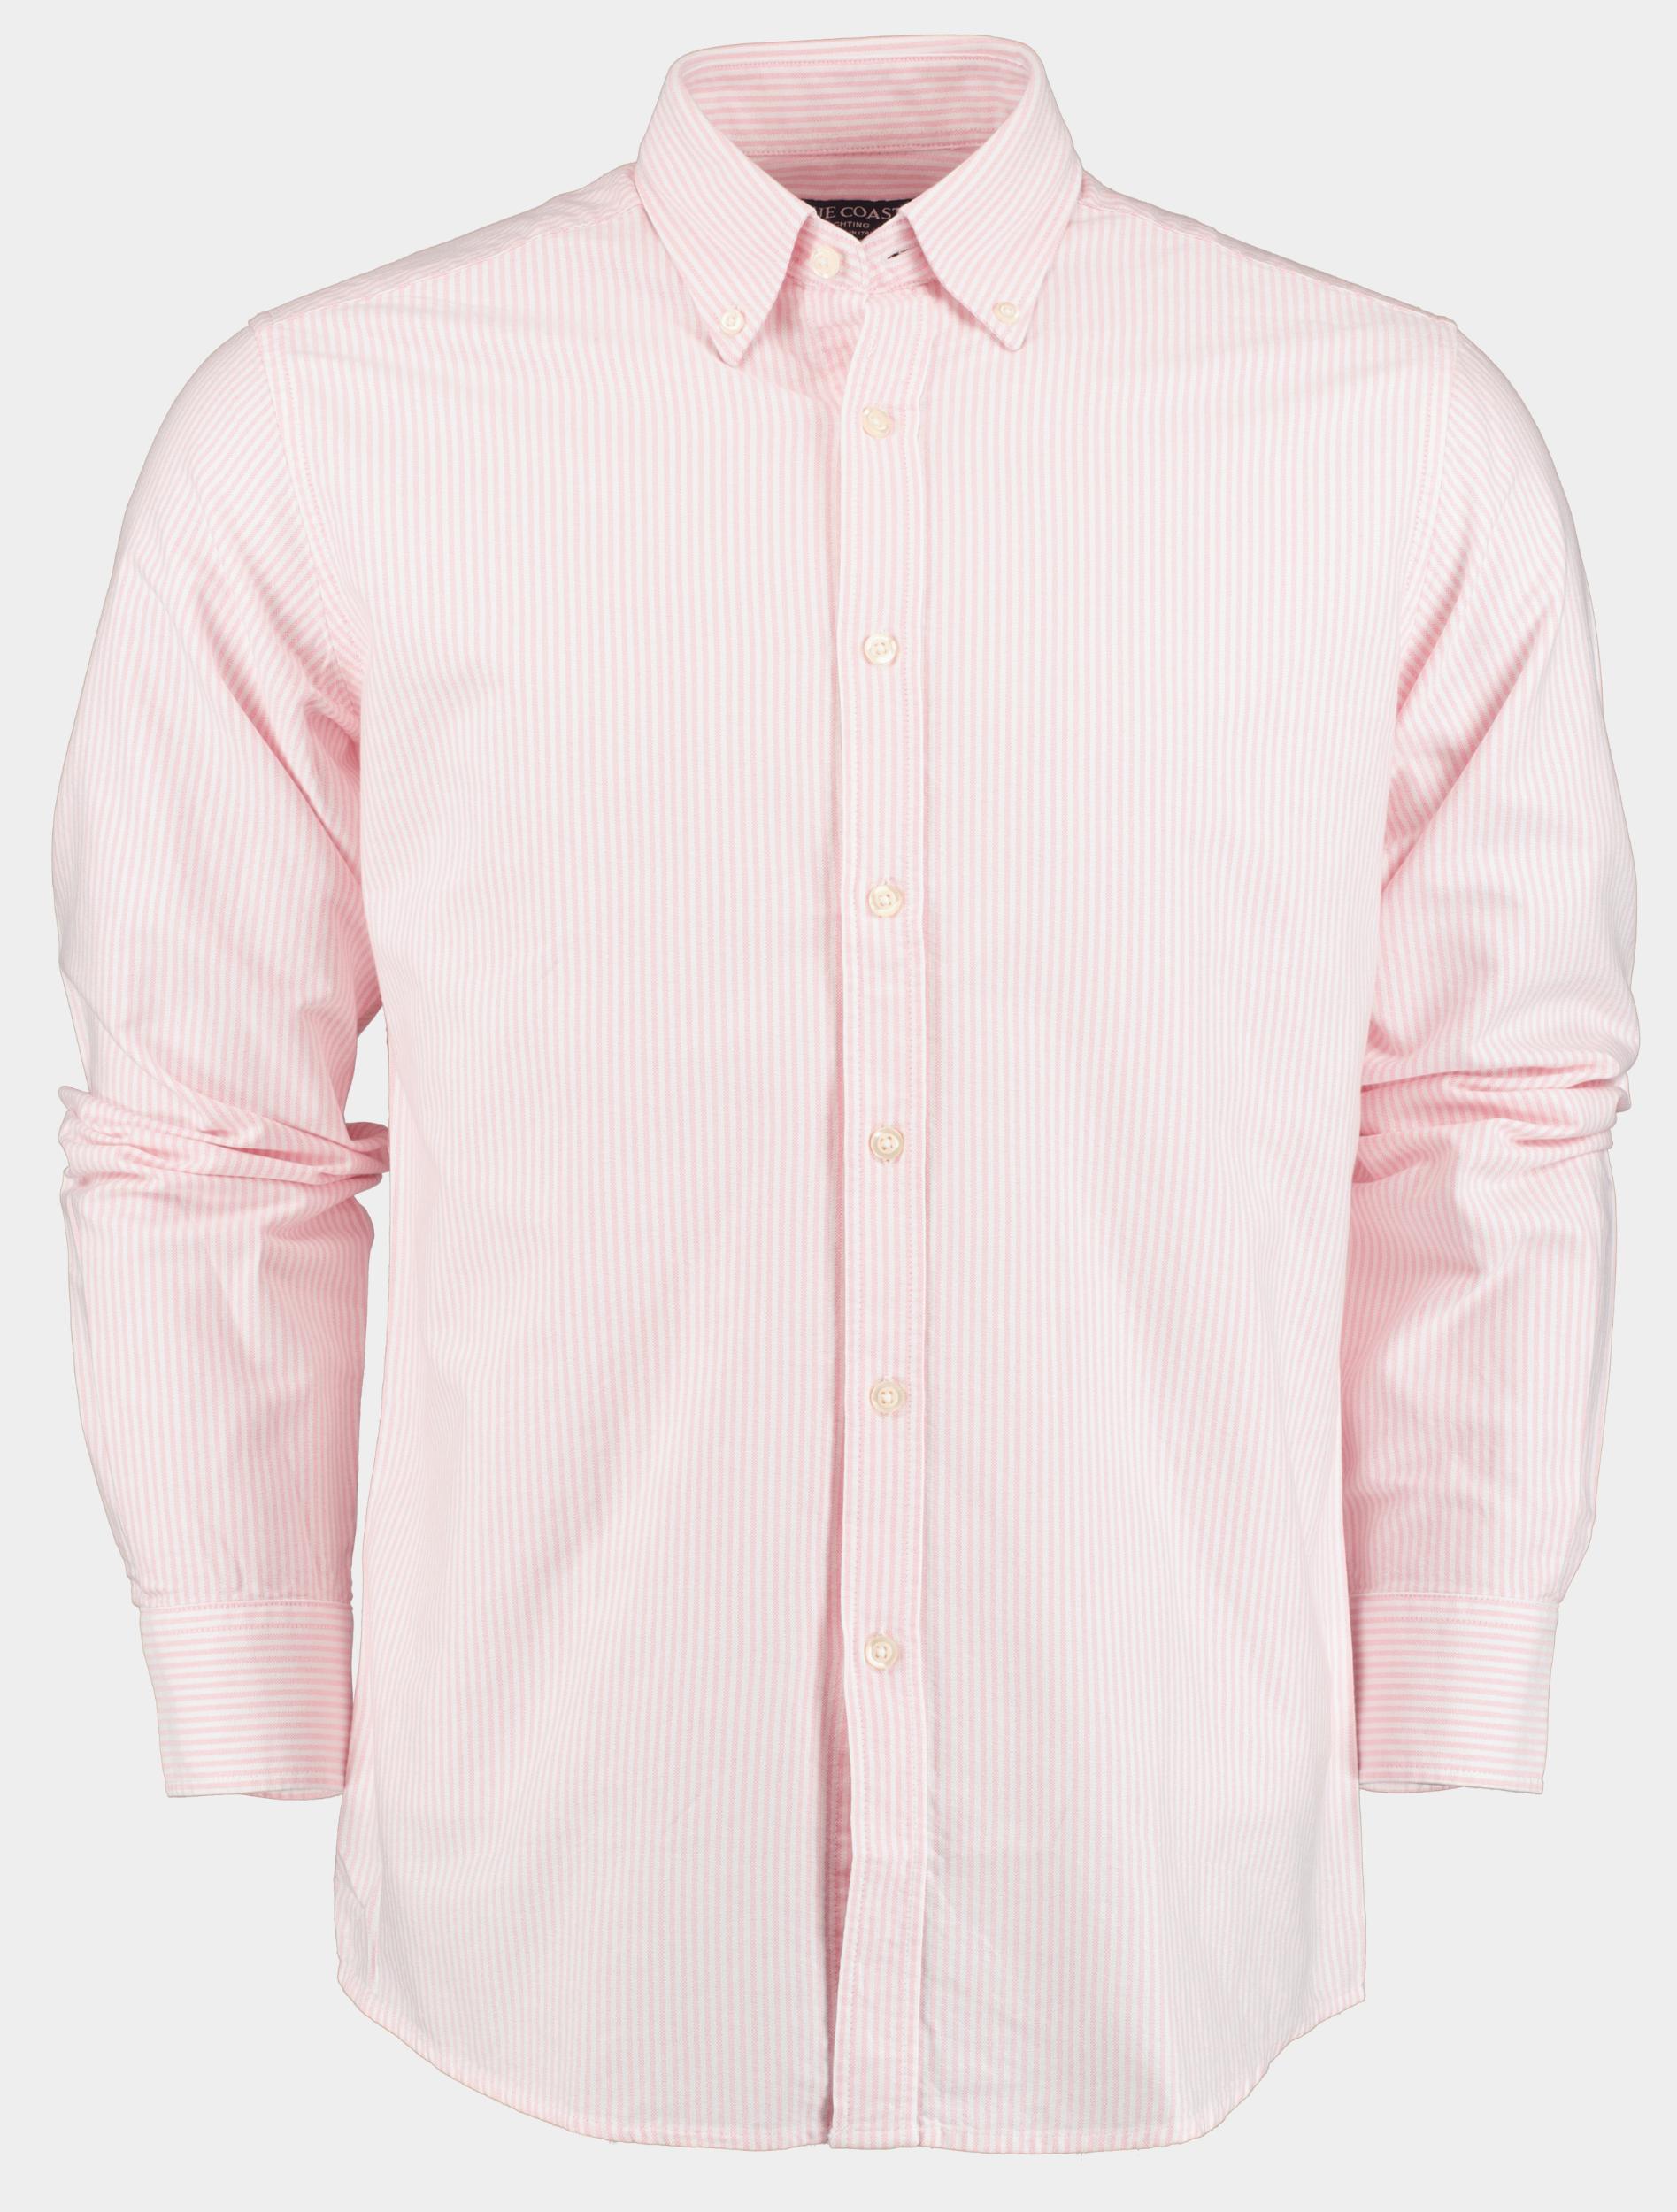 Blue Coast Casual hemd lange mouw Roze Camisa Oxford raya 112/000020